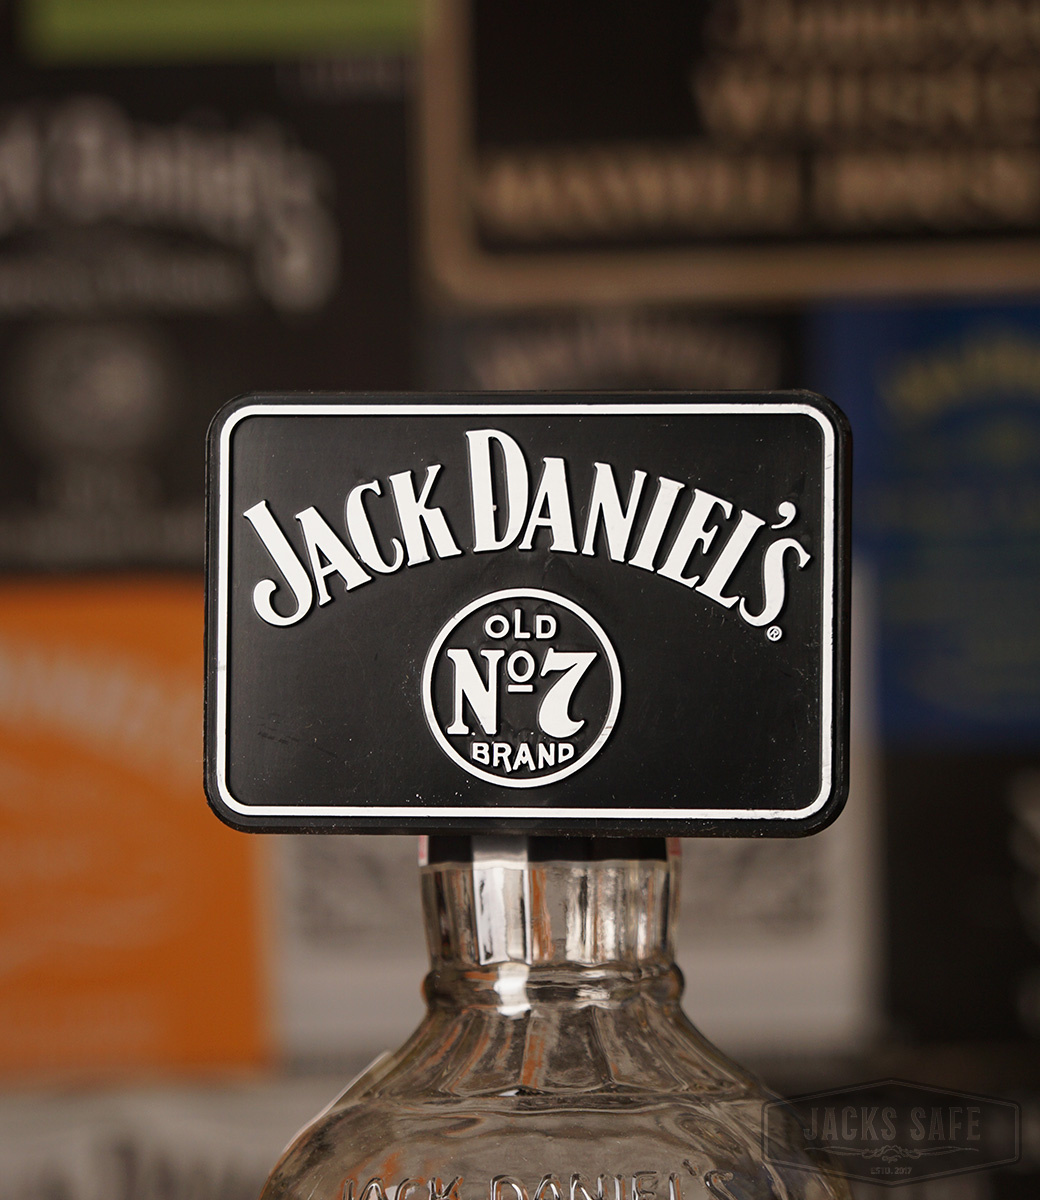 JACK DANIEL'S - Barstuff - Plate for Optic Holder - Honey or Old nr 7 - Advertising Clip on